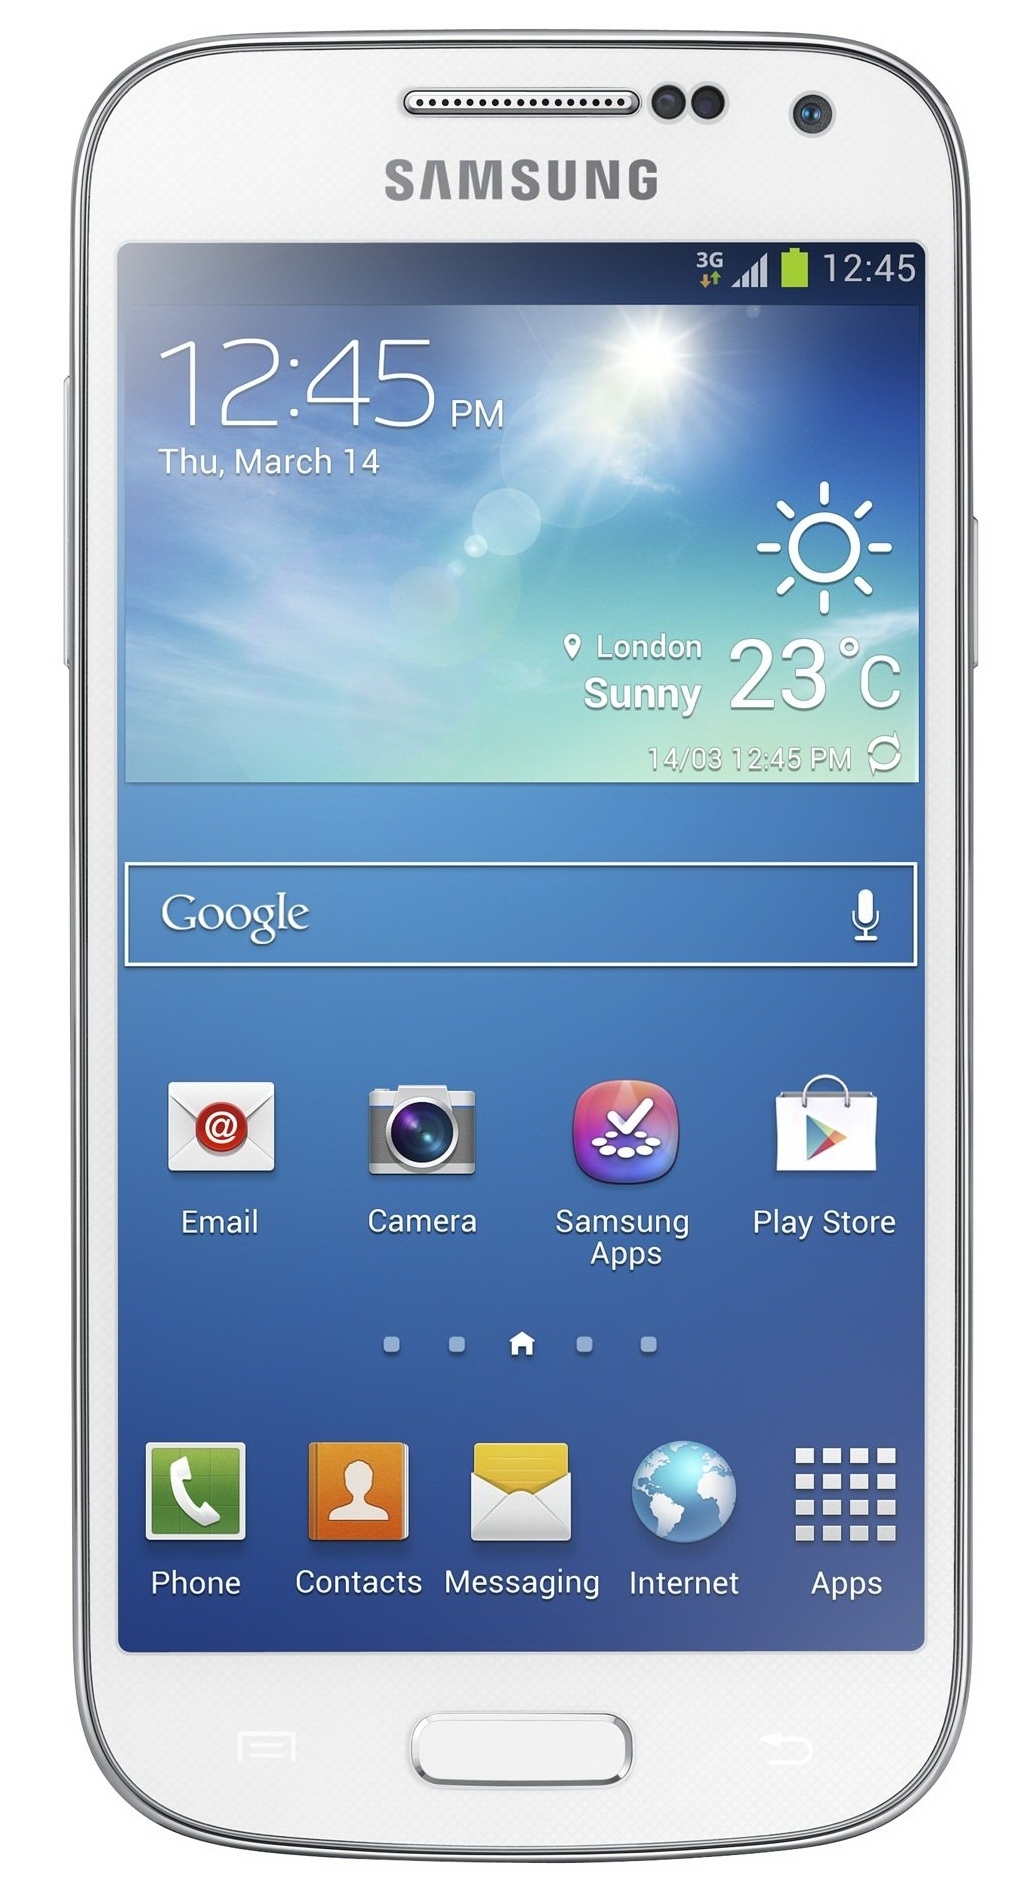 Samsung I9195 Galaxy S4 Mini (White) - зображення 1